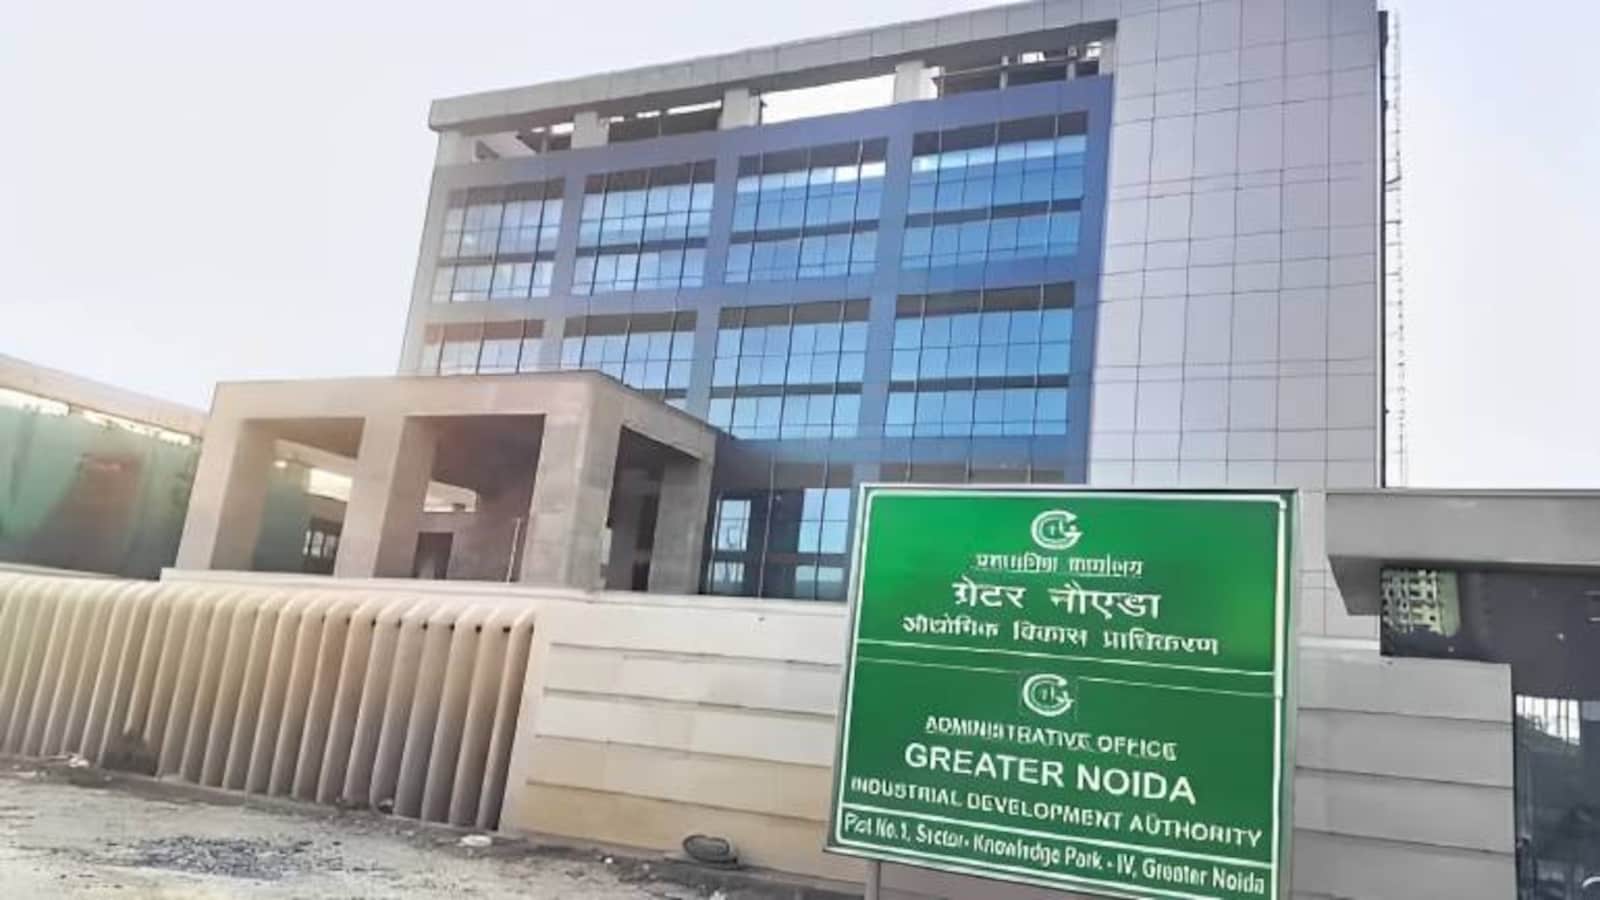 ग्रेटर नोएडा प्राधिकरण भवन में शीघ्र खुलेंगे कर्मचारी भविष्य निधि कार्यालय और एचडीएफसी बैंक